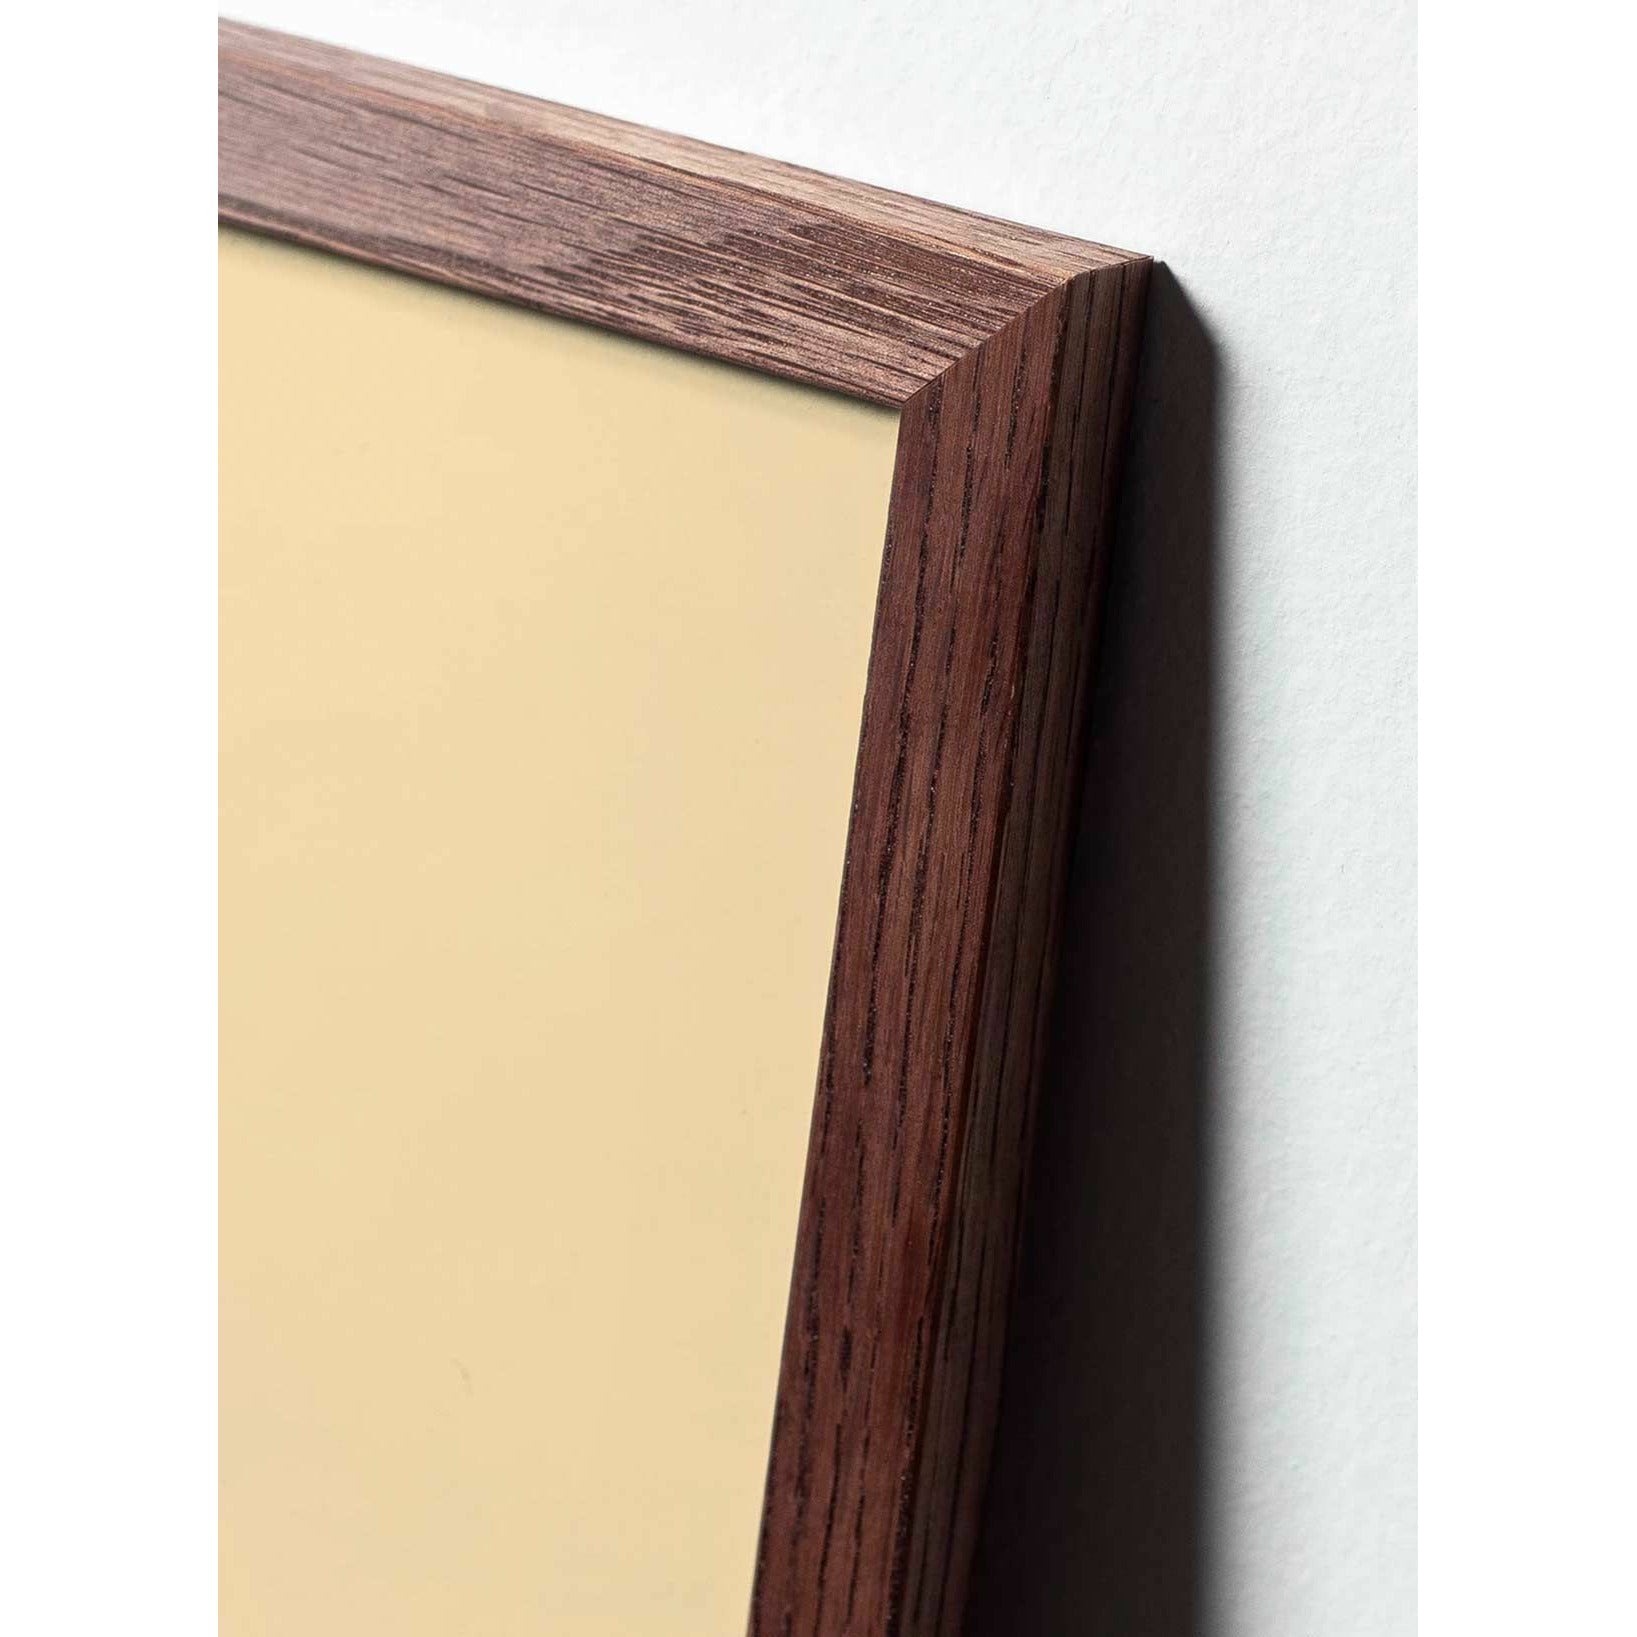 Póster de línea de huevo de precisión, marco de madera oscura 30x40 cm, fondo blanco